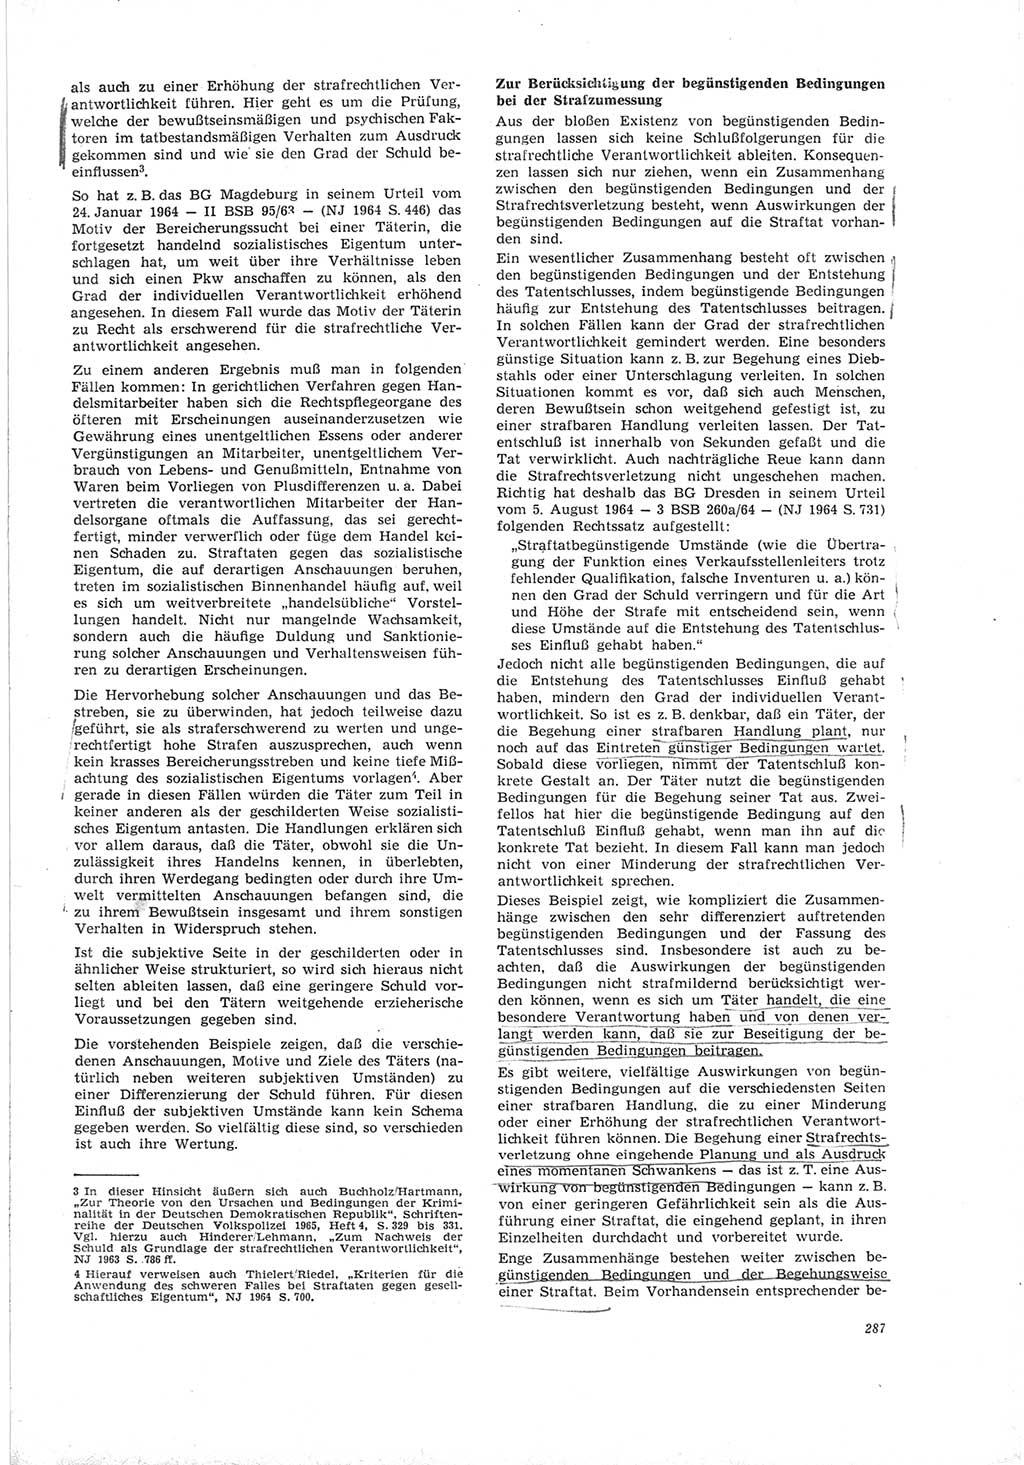 Neue Justiz (NJ), Zeitschrift für Recht und Rechtswissenschaft [Deutsche Demokratische Republik (DDR)], 19. Jahrgang 1965, Seite 287 (NJ DDR 1965, S. 287)